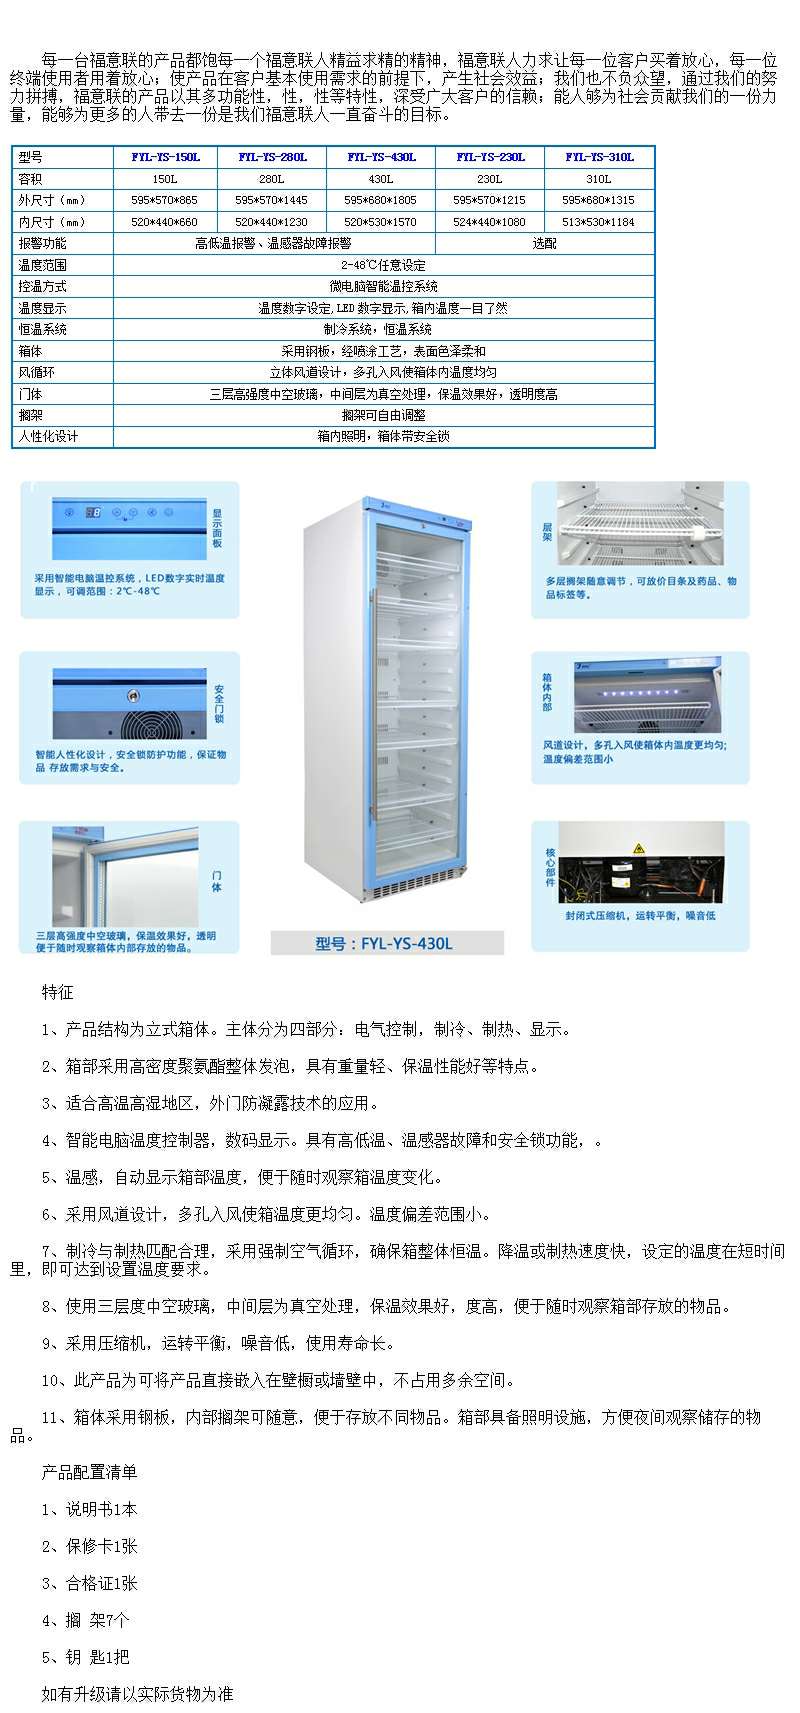 样品储藏冰箱样品及标样冷藏柜FYL-YS-230L